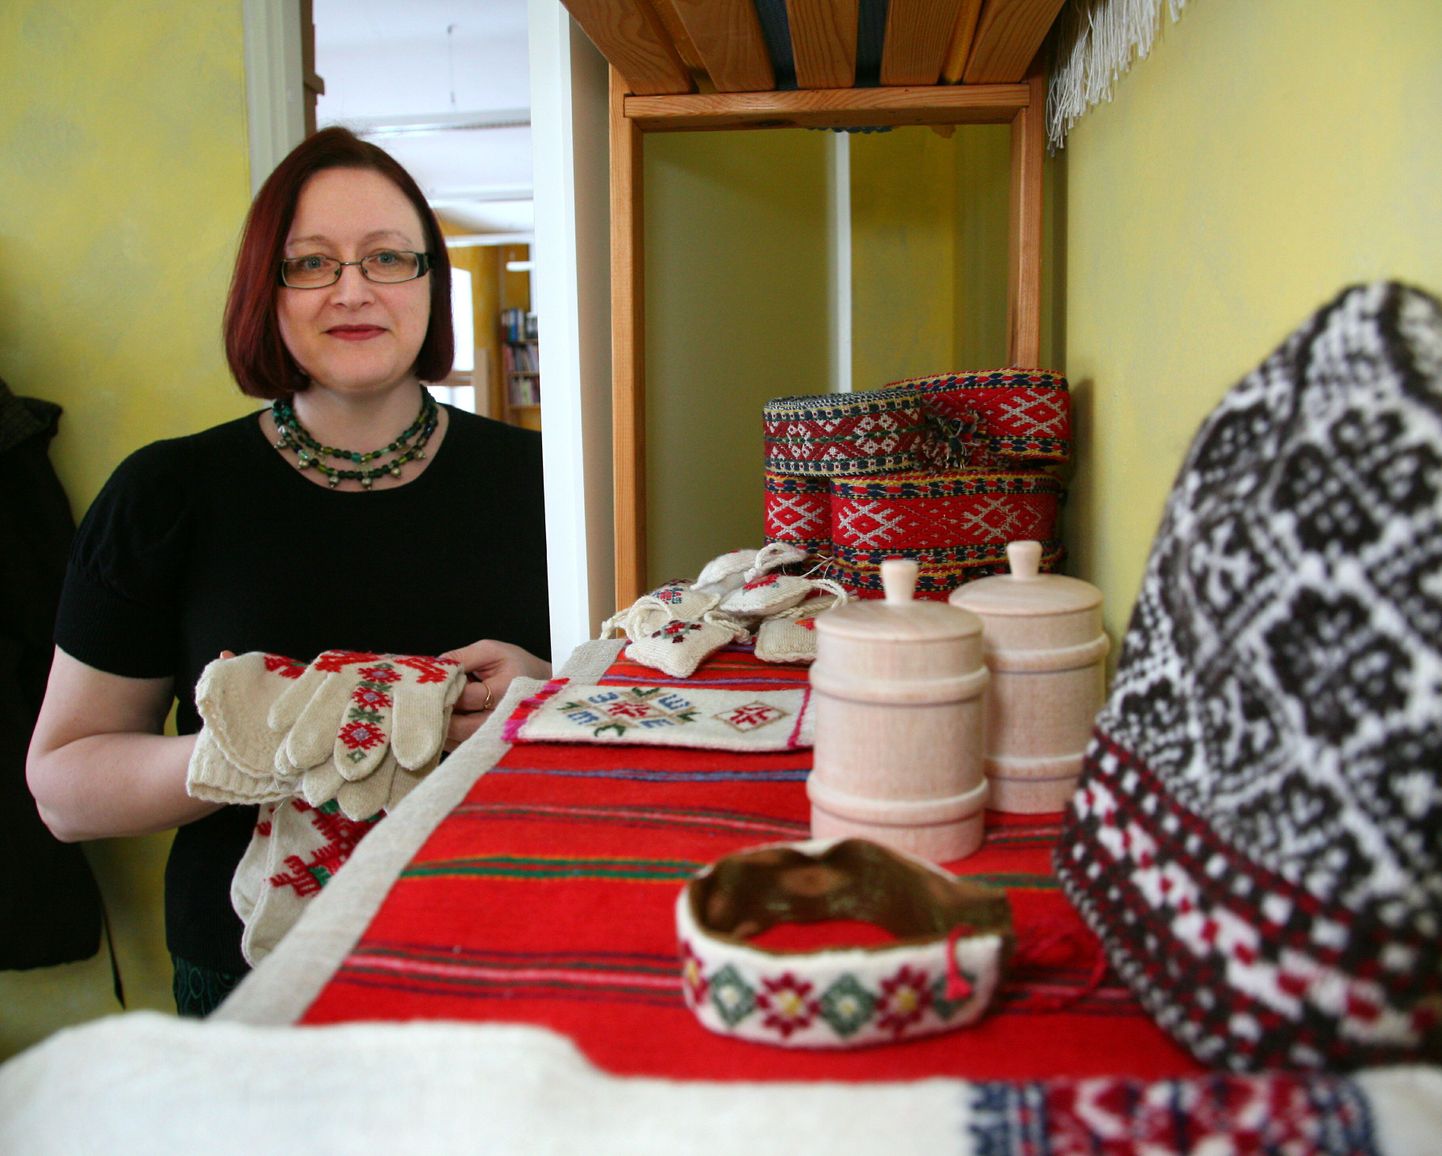 Veebruari alguses Tõstamaa vallavolikogult kõrgeima tunnustuse ehk vapimärgi pälvinud Anu Randmaale omistas Eesti rahvakunsti ja käsitöö liit nädalavahetusel tiitli "Pärandihoidja 2016".